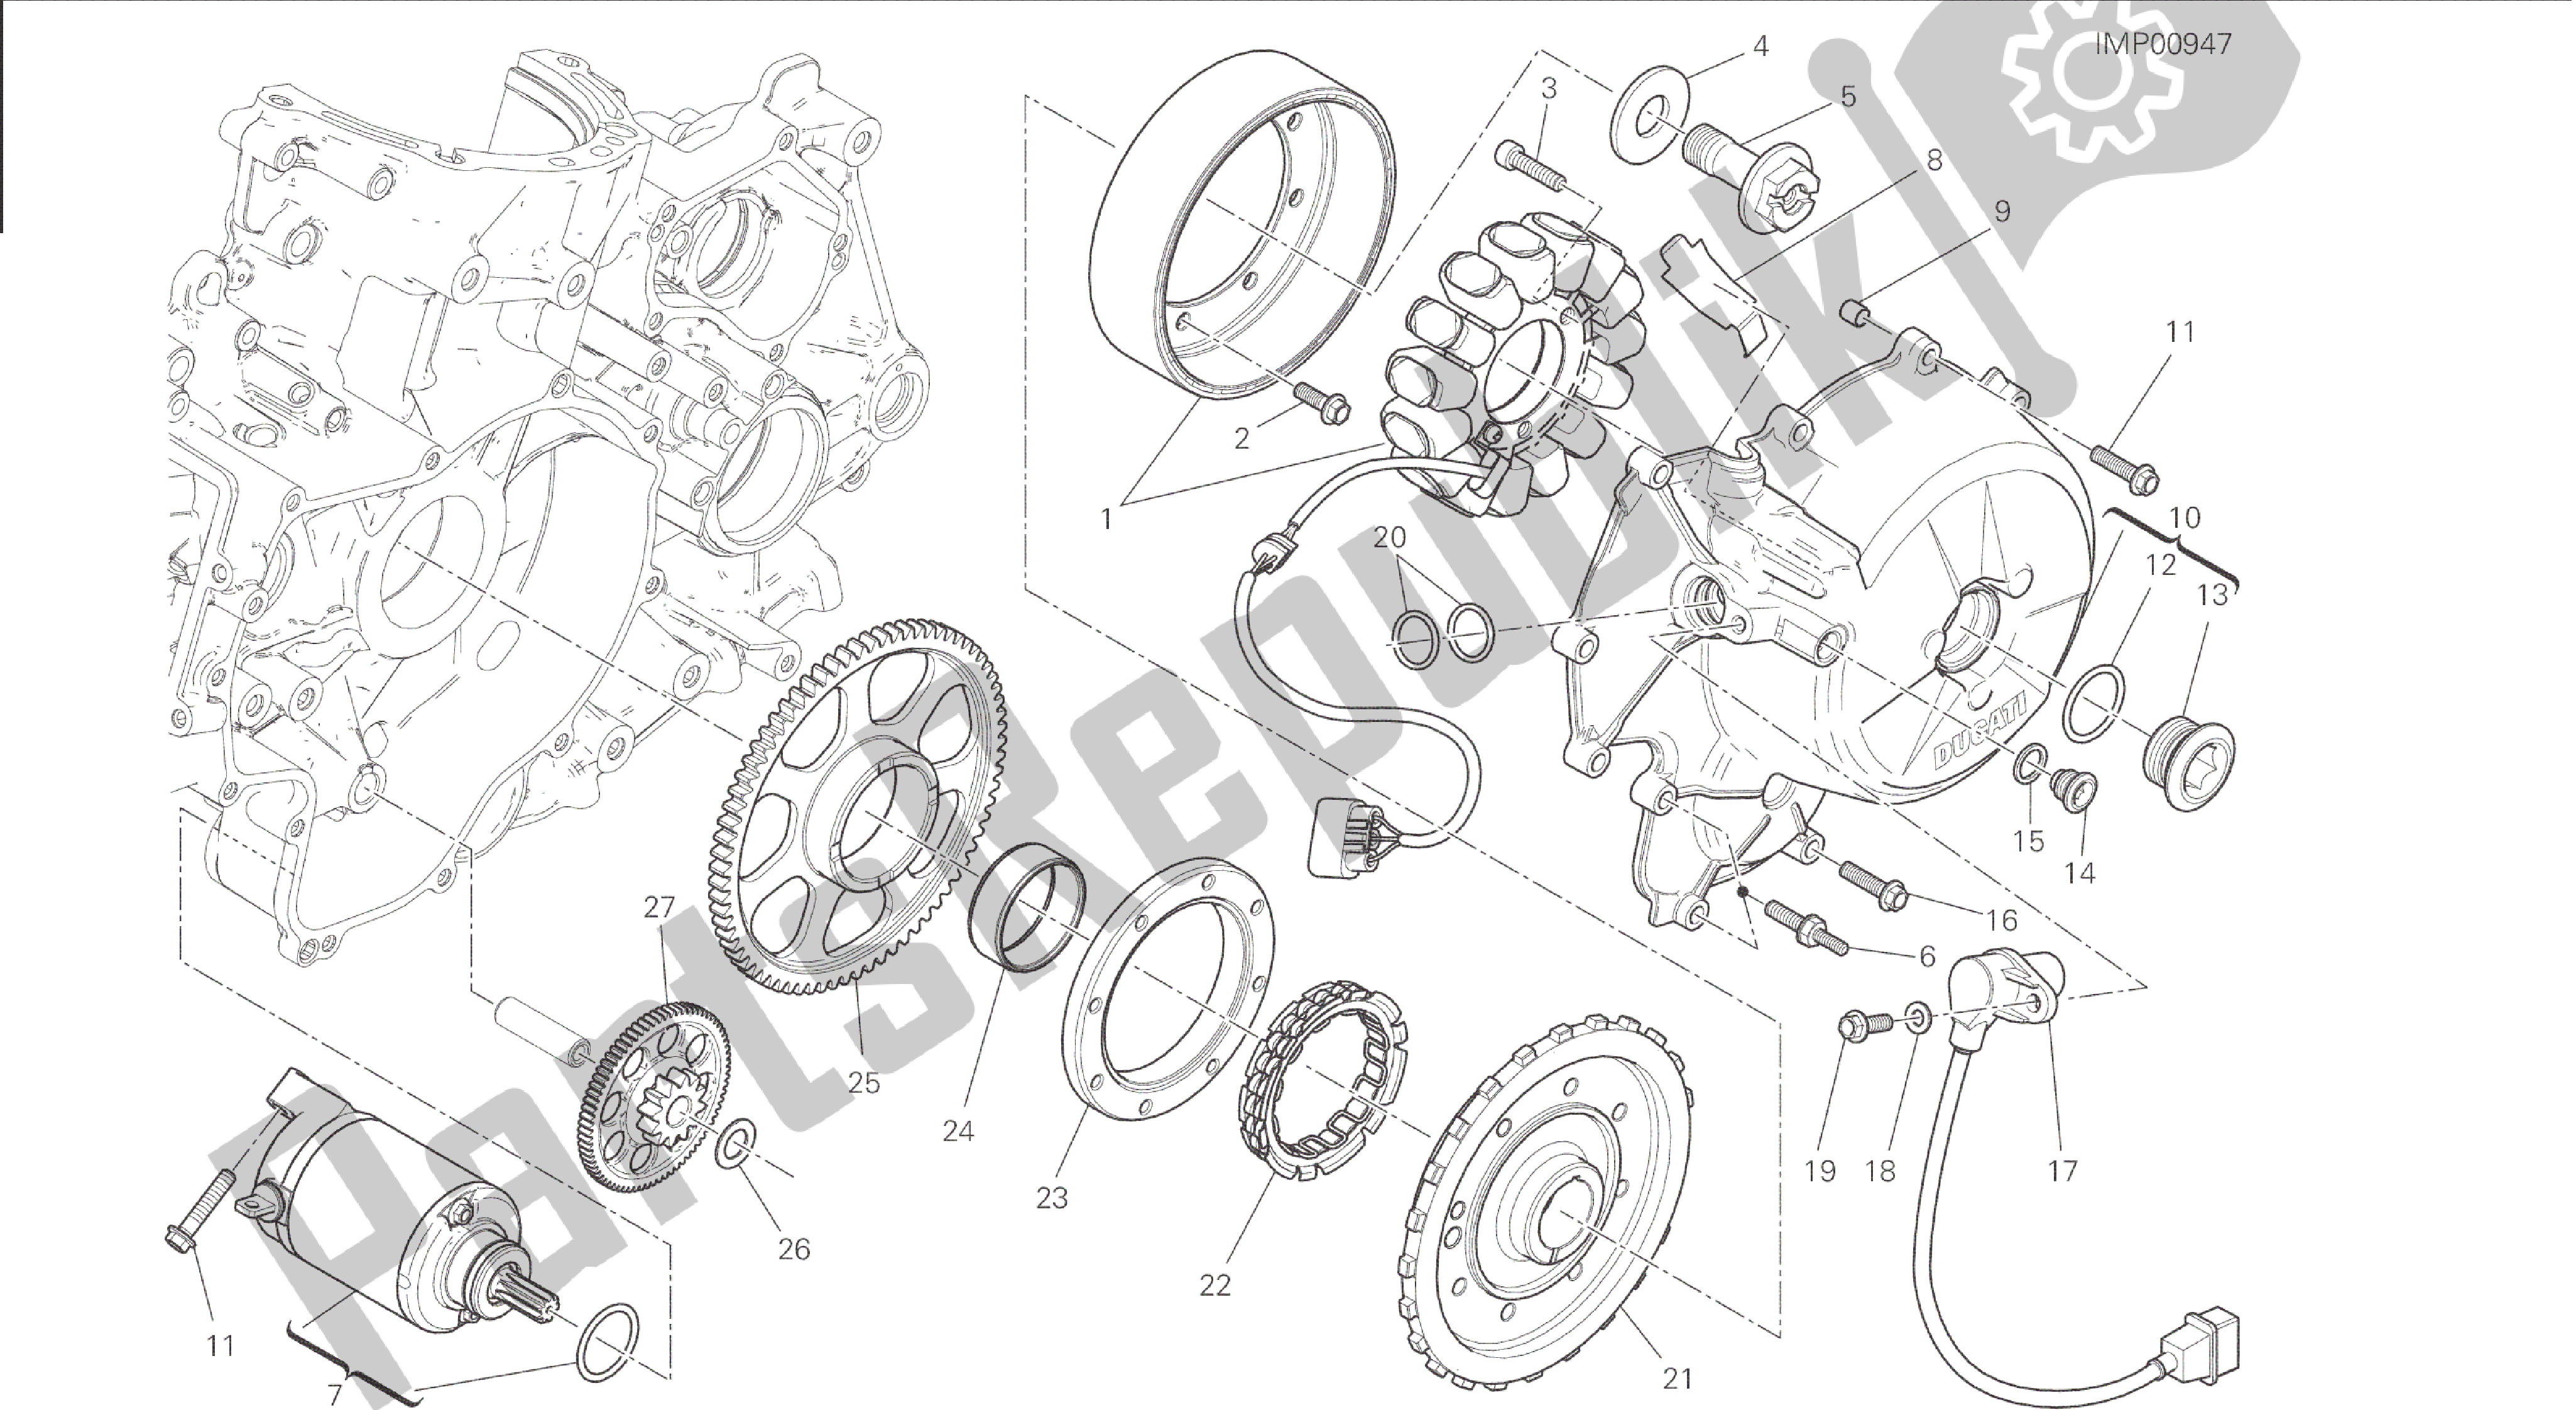 Todas las partes para Dibujo 012 - Arranque Eléctrico Y Encendido [mod: 1199r; Xst: Motor De Grupo Aus, Eur, Fra, Jap, Twn] de Ducati Panigale 1198 2015